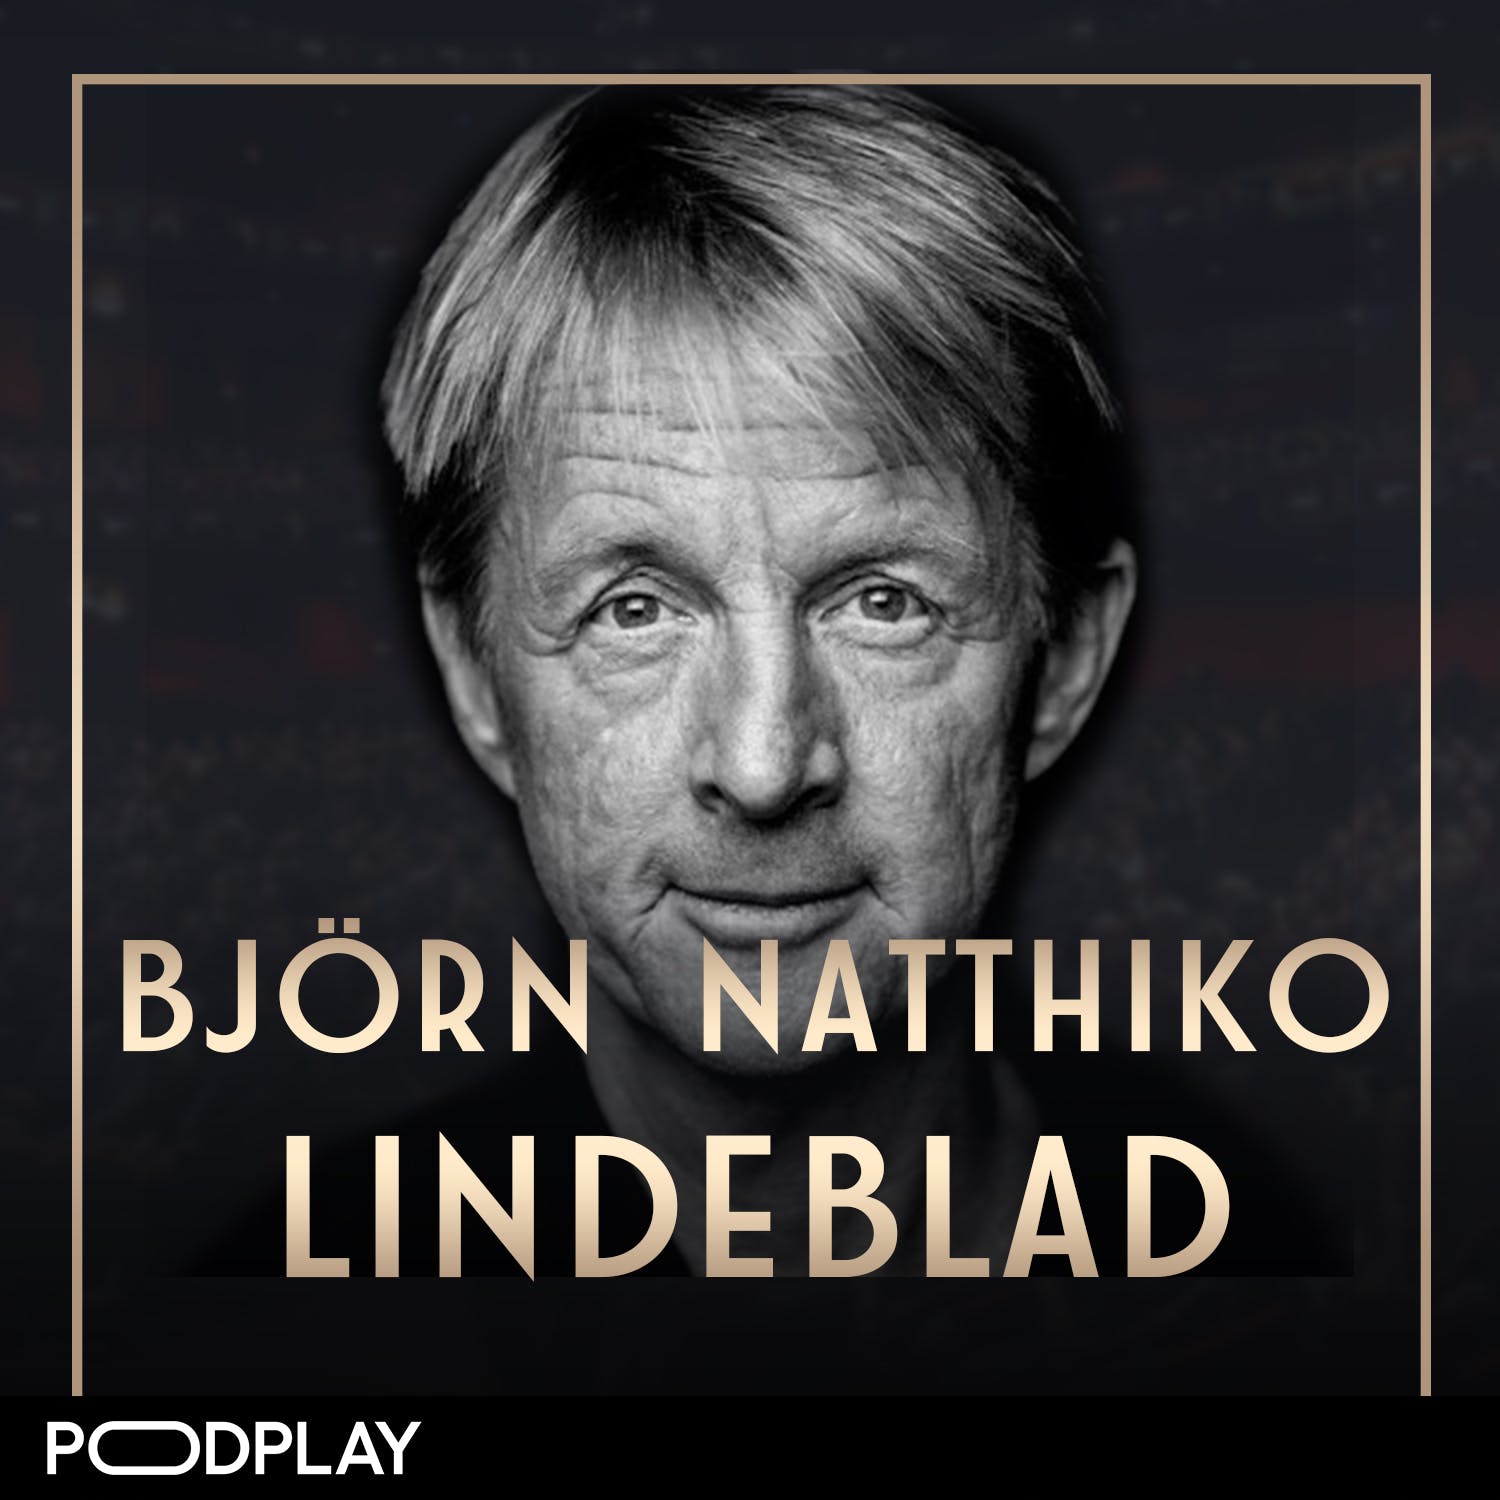 432. Björn Natthiko Lindeblad - Tack & farväl